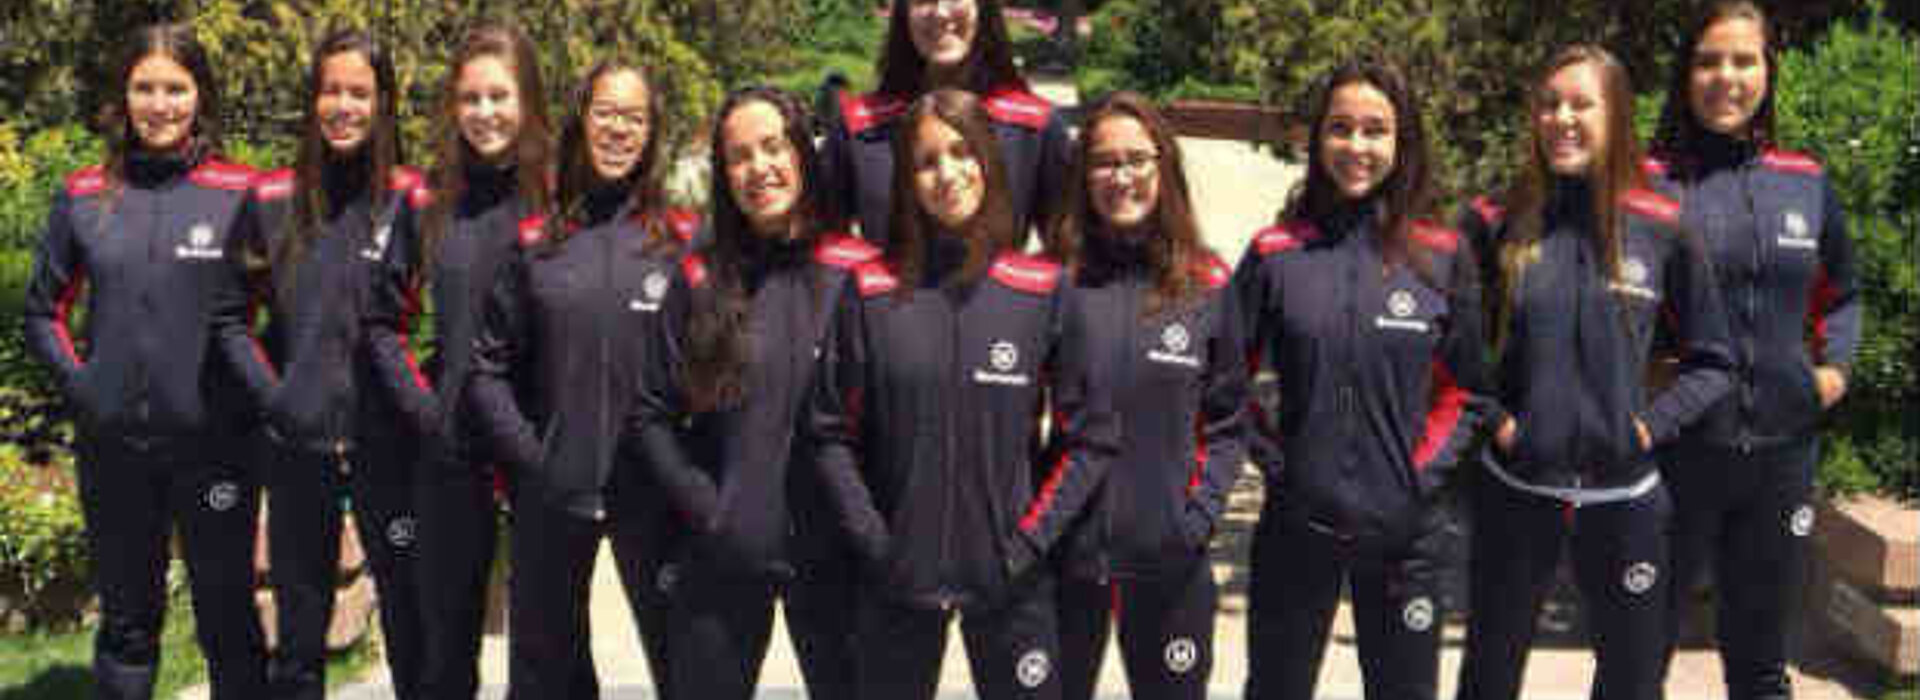 Equipe de natação feminina reunida 